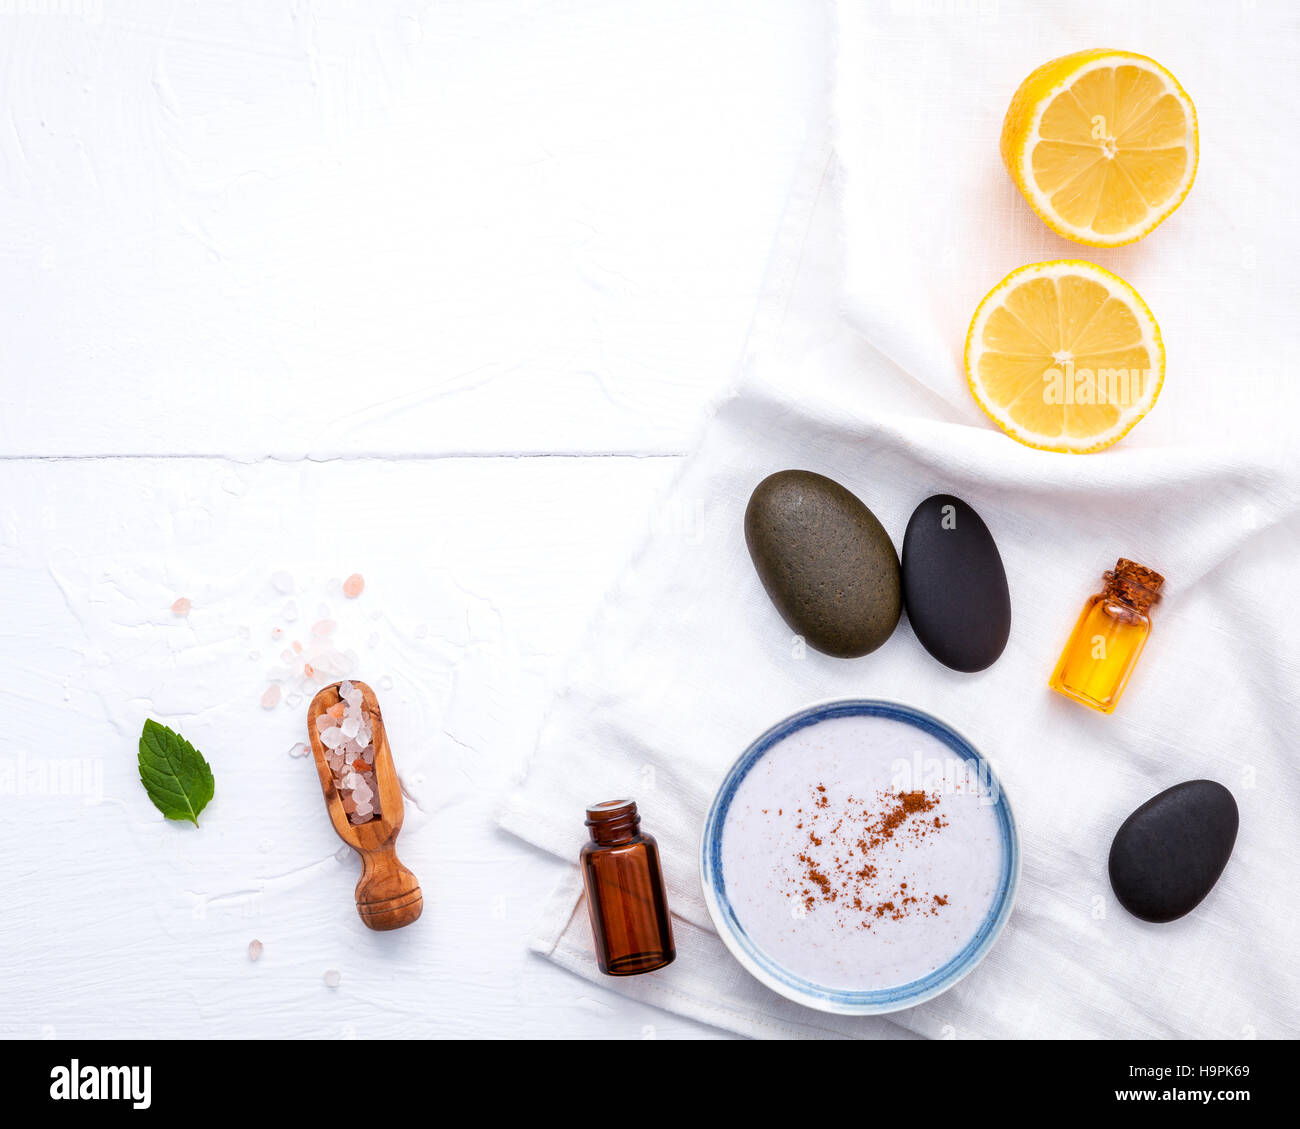 Des soins de la peau et du corps avec des produits naturels le citron Banque D'Images